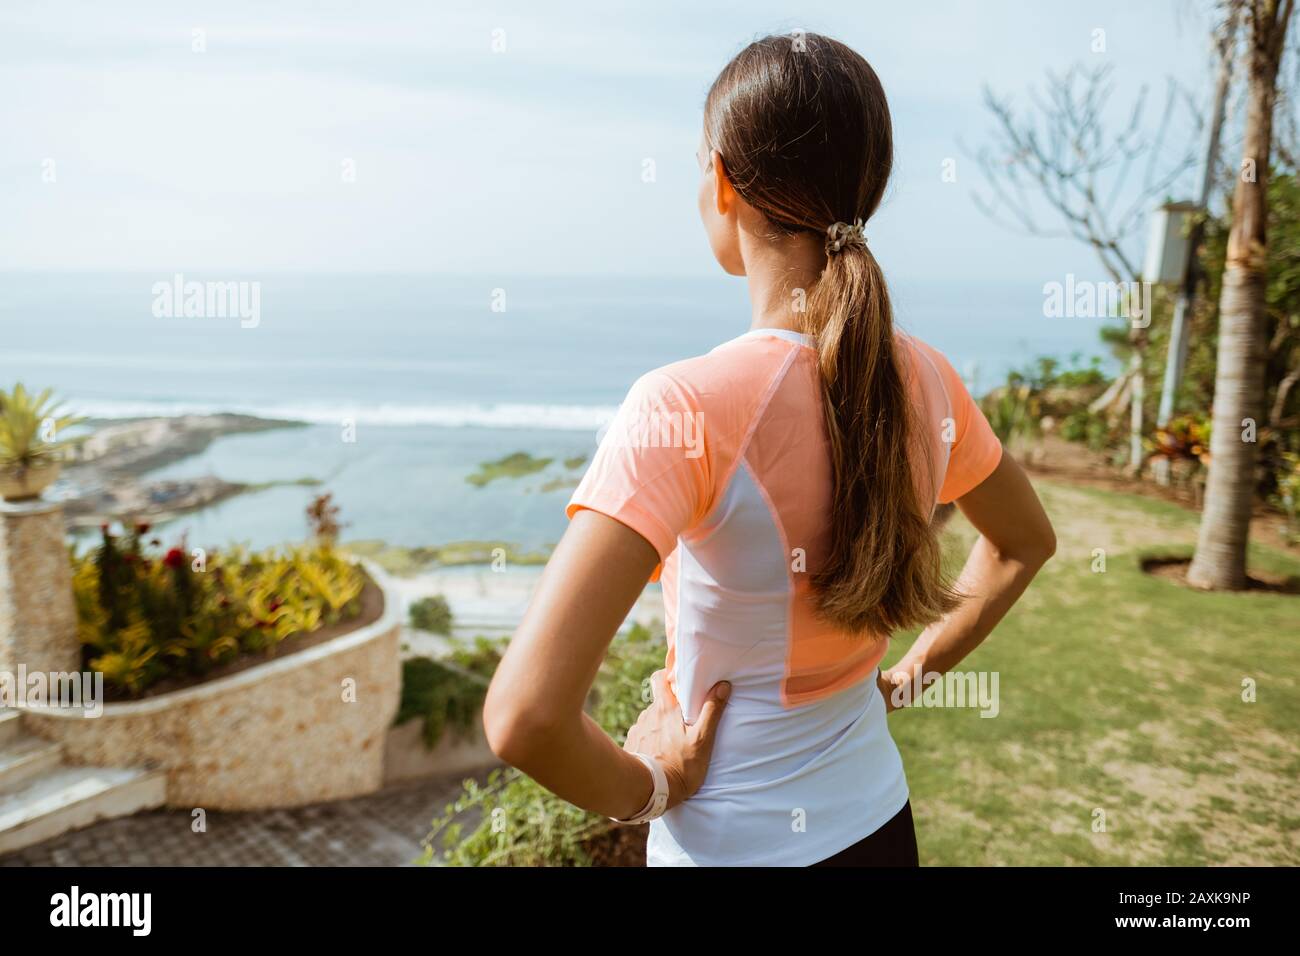 Fitness-Sport-Mädchen nach intensivem Lauf, junge attraktive Läuferin, die nach dem Joggen im Freien am Strand von der Klippe aus die Pause macht Stockfoto